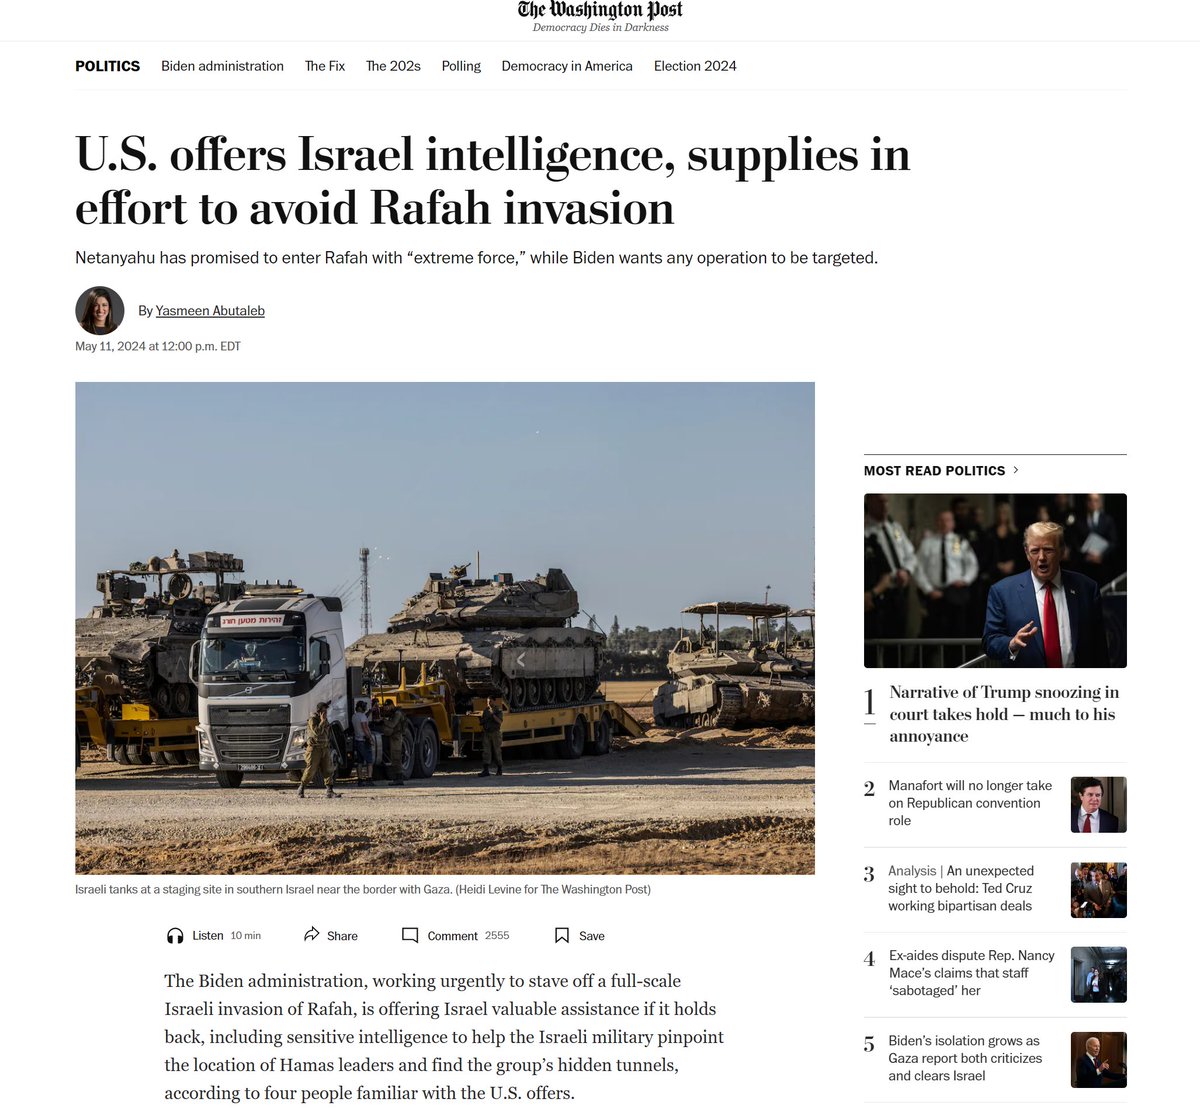 Informe del The Washington Post: La administración Biden está ofreciendo a Israel una “valiosa ayuda si se detiene; incluyendo inteligencia sensible para localizar a los líderes de Hamás y túneles ocultos”. Tienen esa información, ¿y la usan para coaccionar?